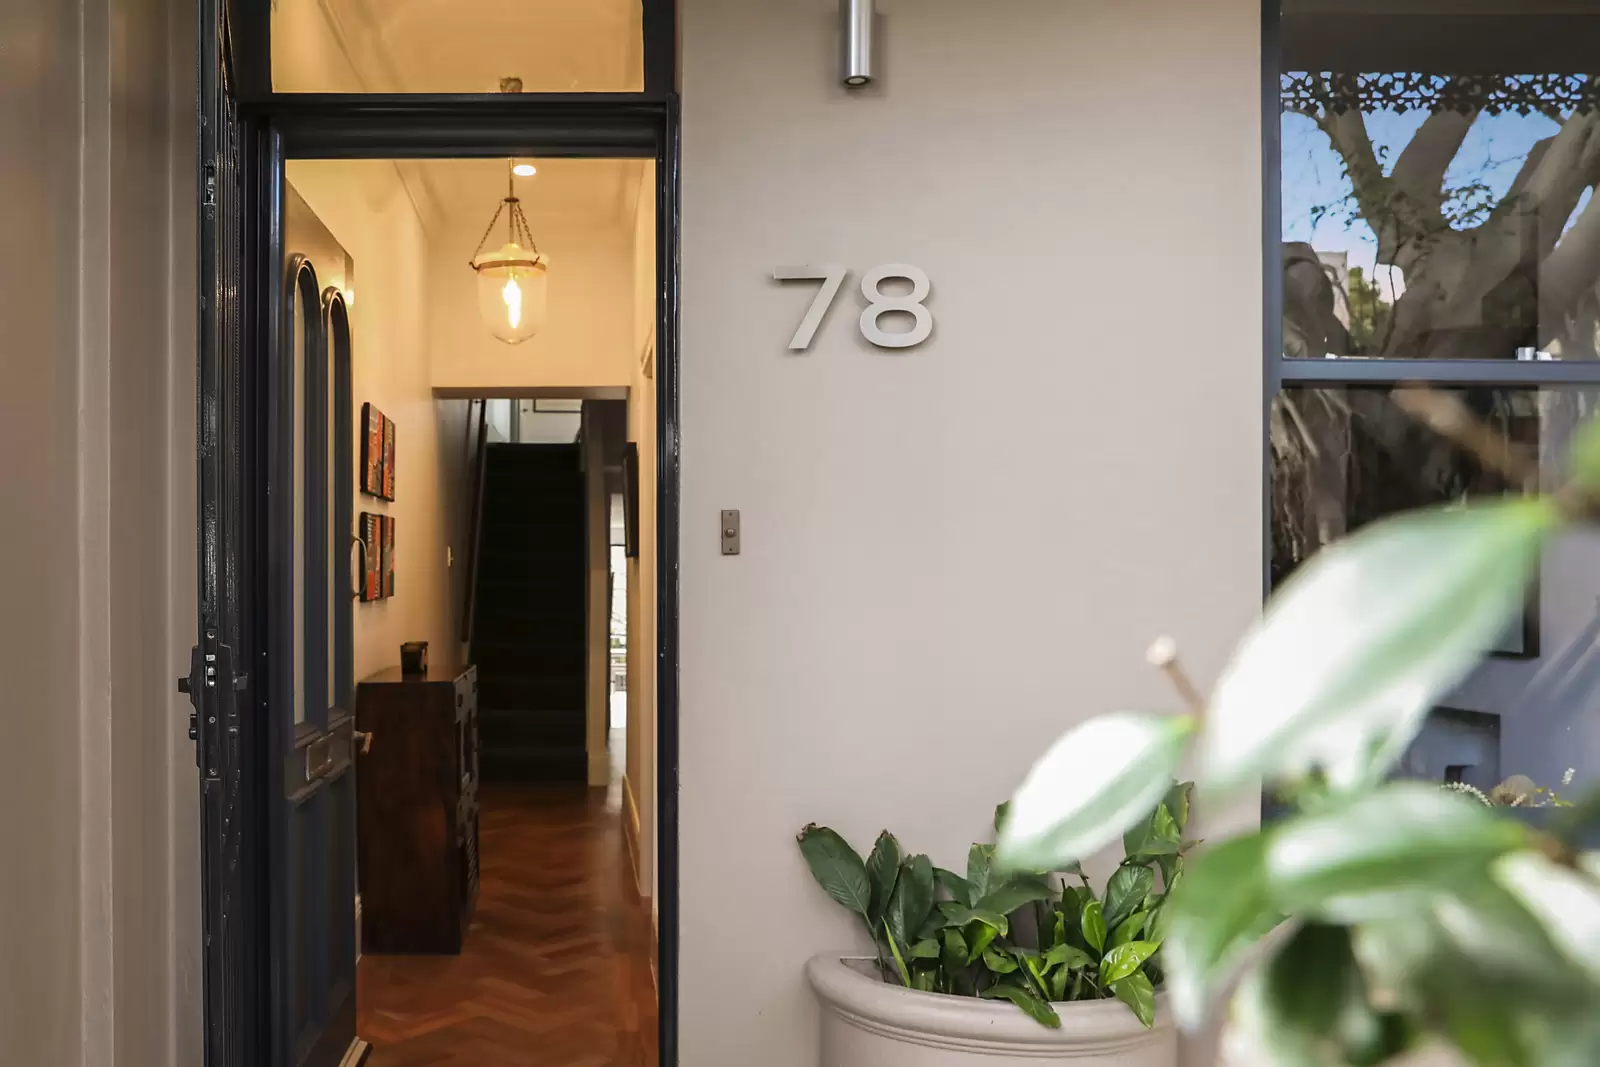 78 Paddington Street, Paddington Sold by Sydney Sotheby's International Realty - image 1